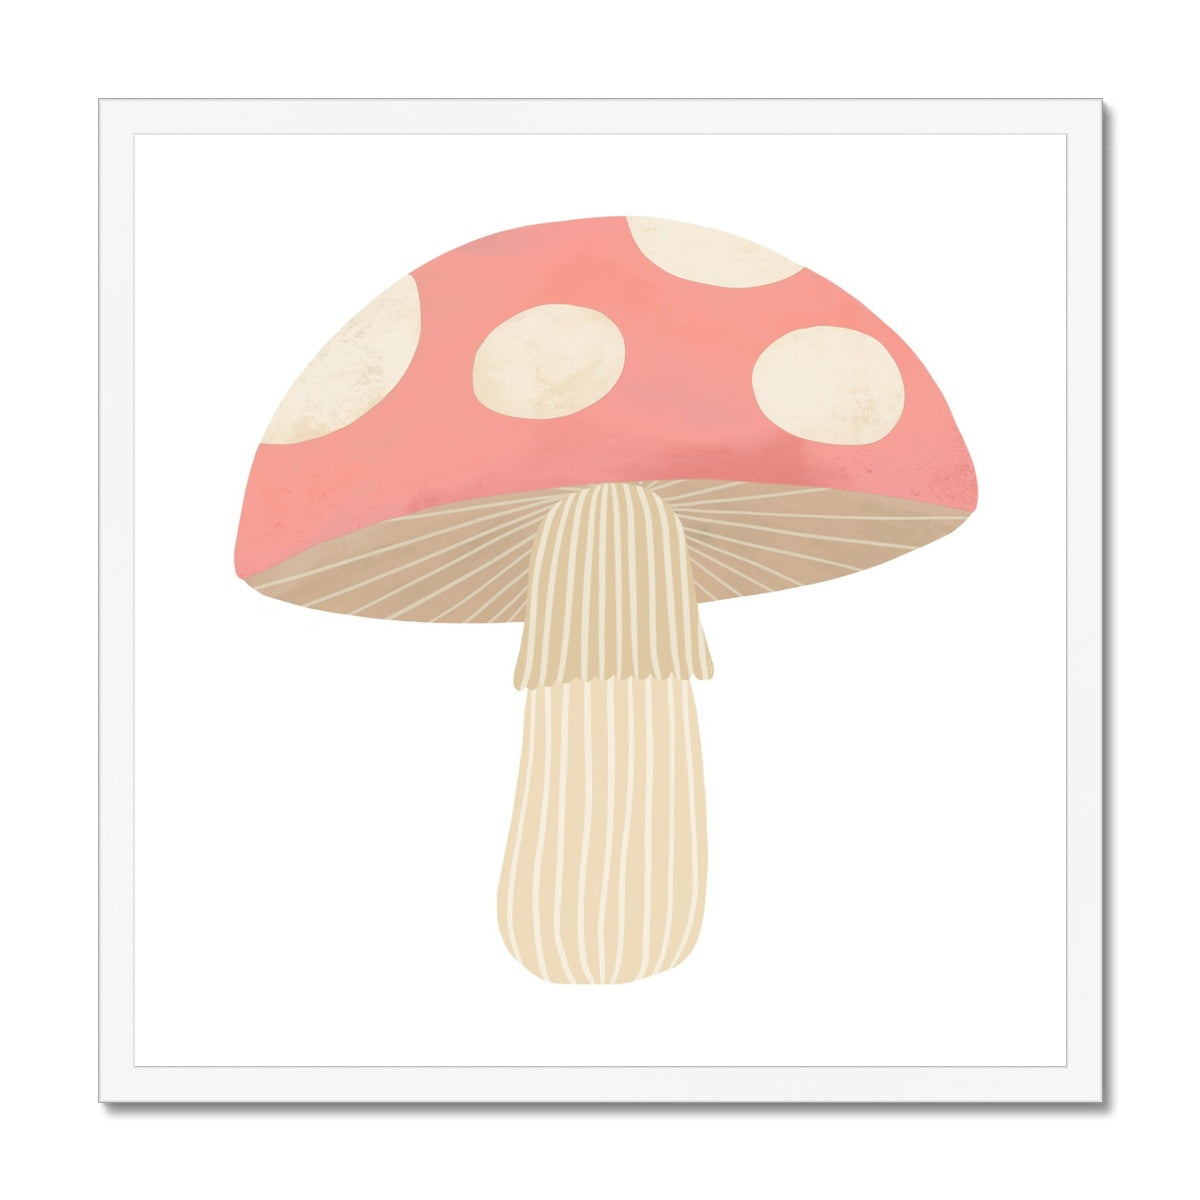 Mushroom in pink / Framed Print